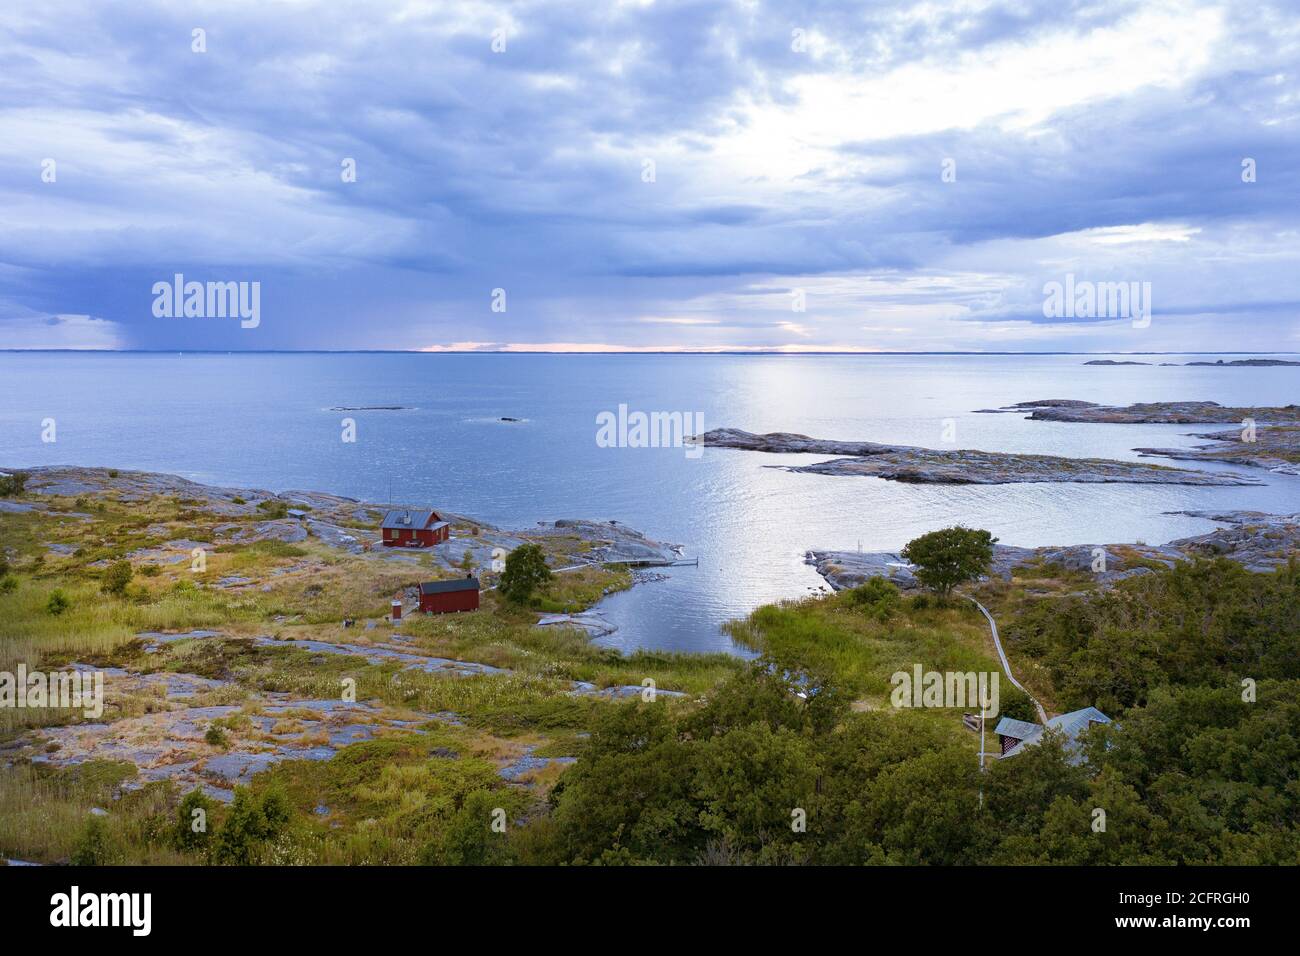 Horssten (auch Hårsten genannt), ist eine Insel mit einem Leuchtturm in den verlassenen Teilen des Stockholmer Archipels in der Ostsee. Stockfoto